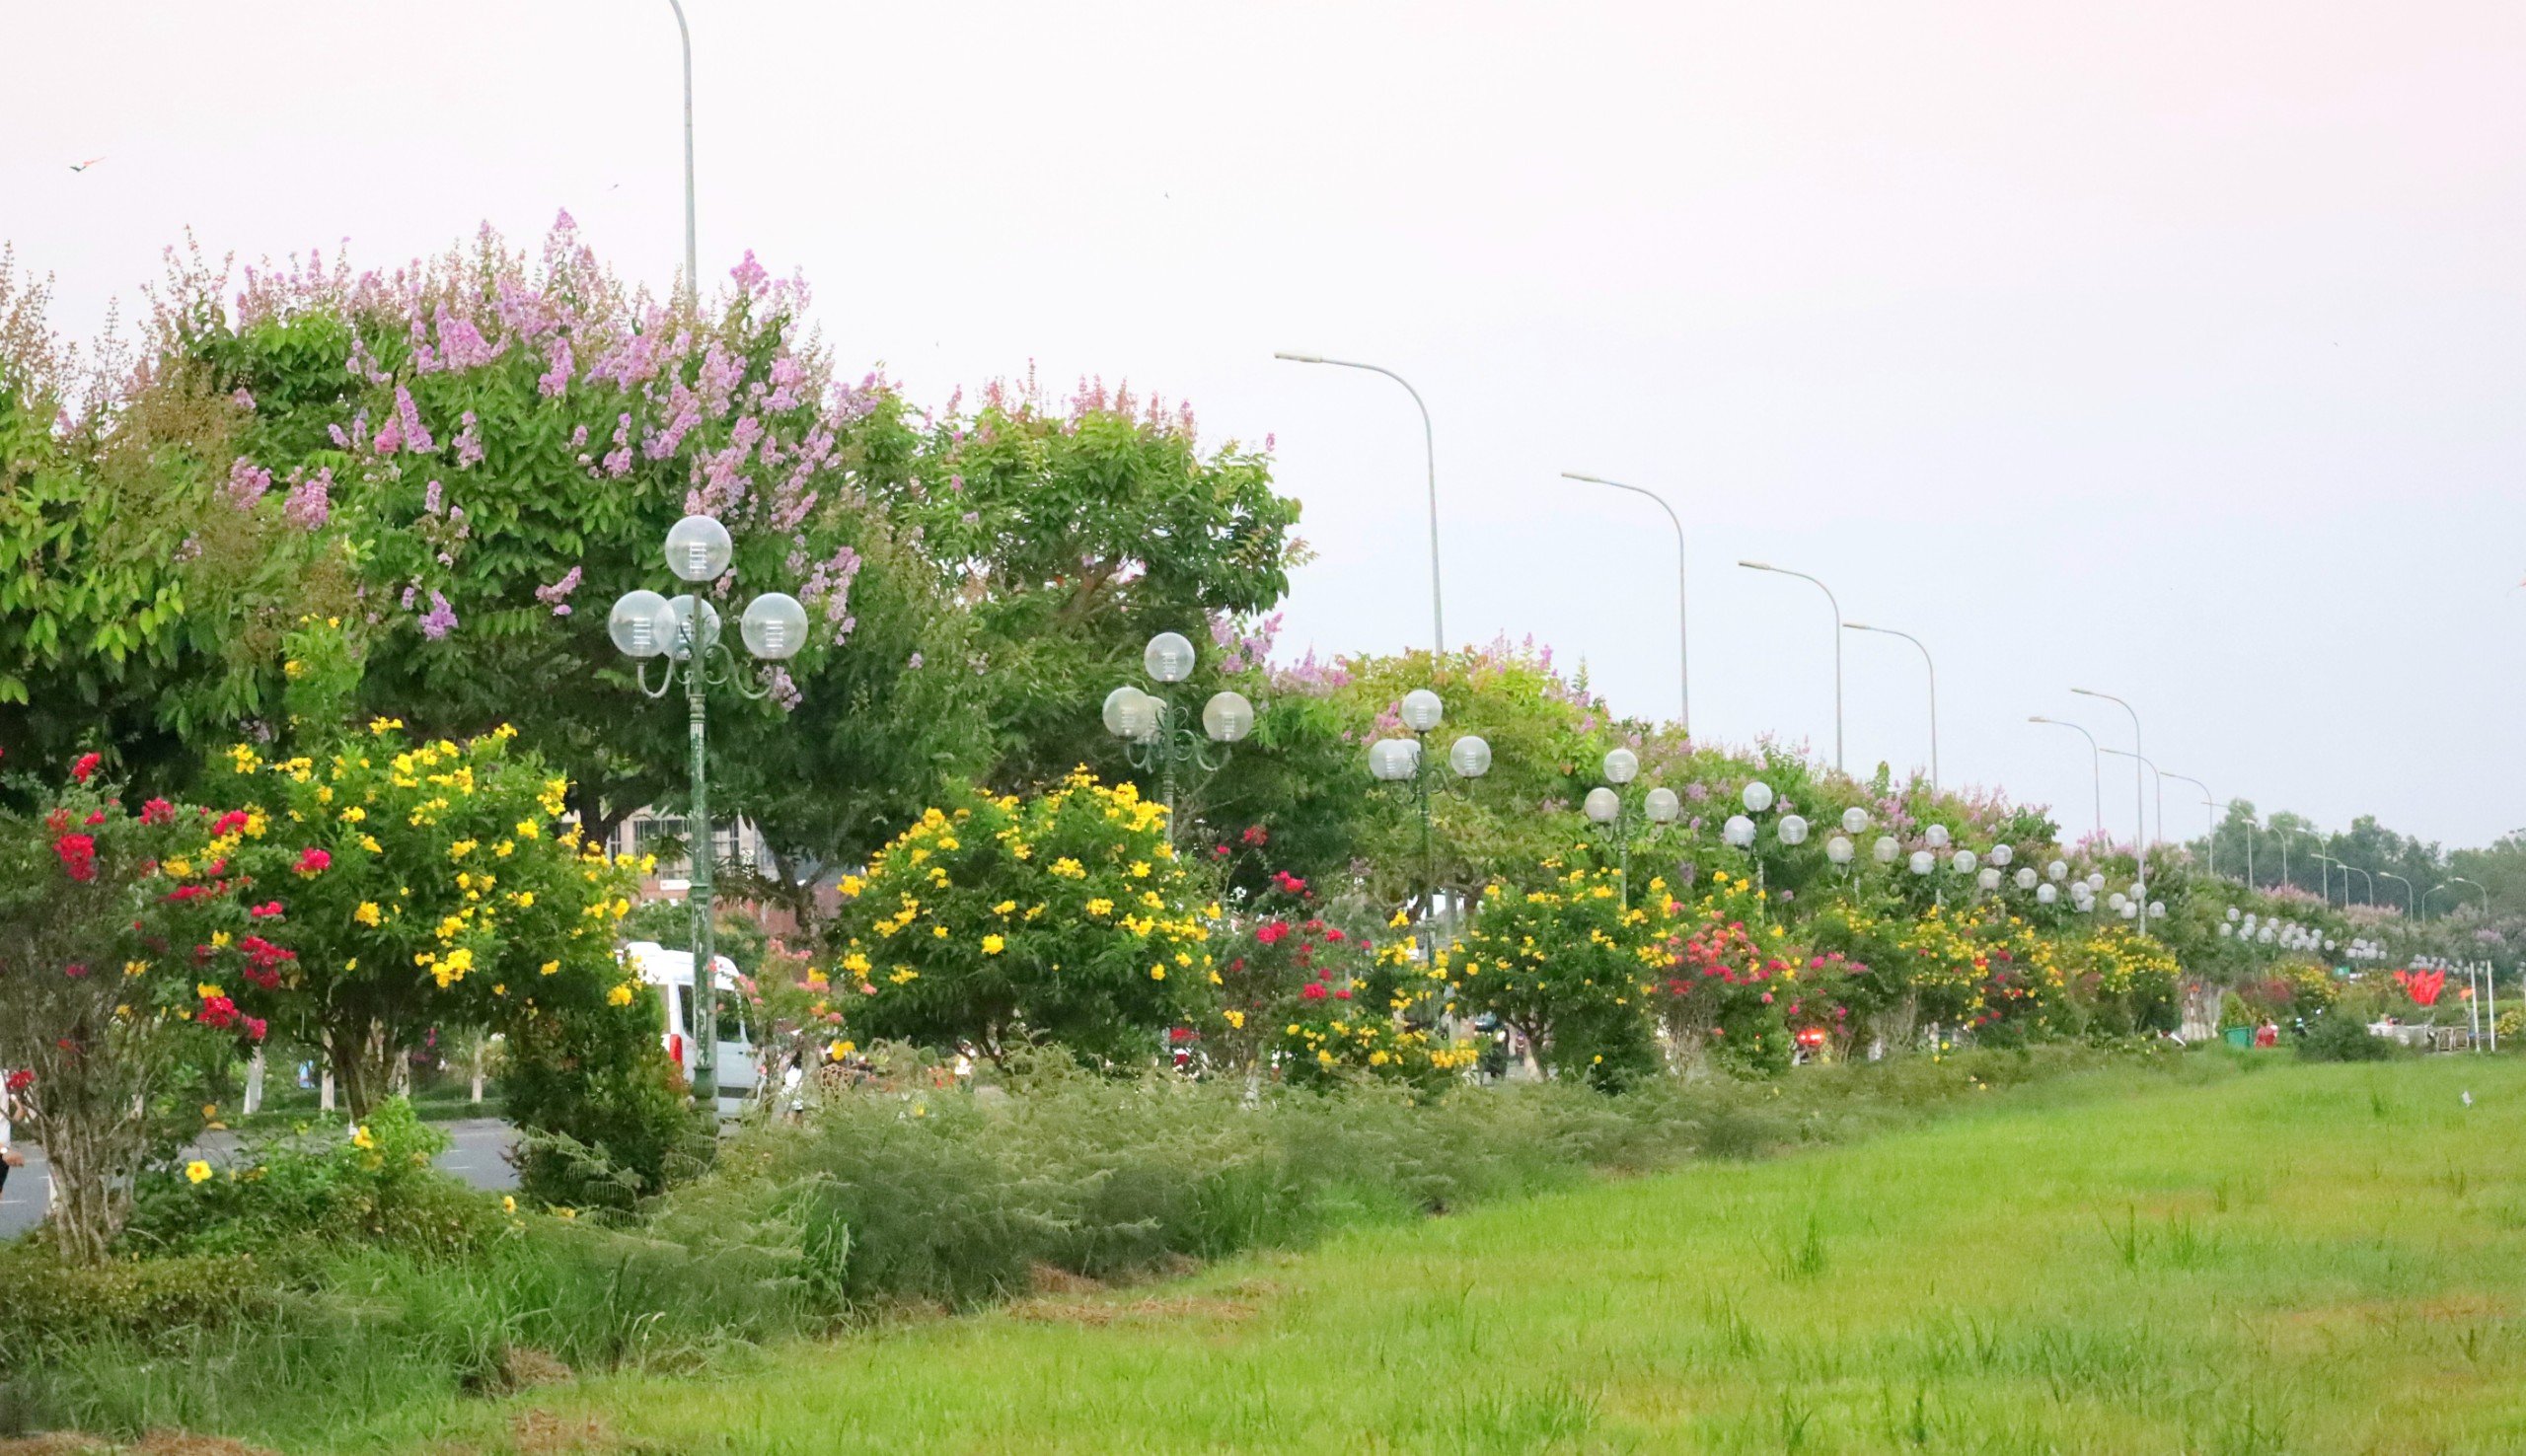 Khu vực trước trung tâm hành chính tỉnh Vĩnh Long được trồng nhiều loại hoa khác nhau.